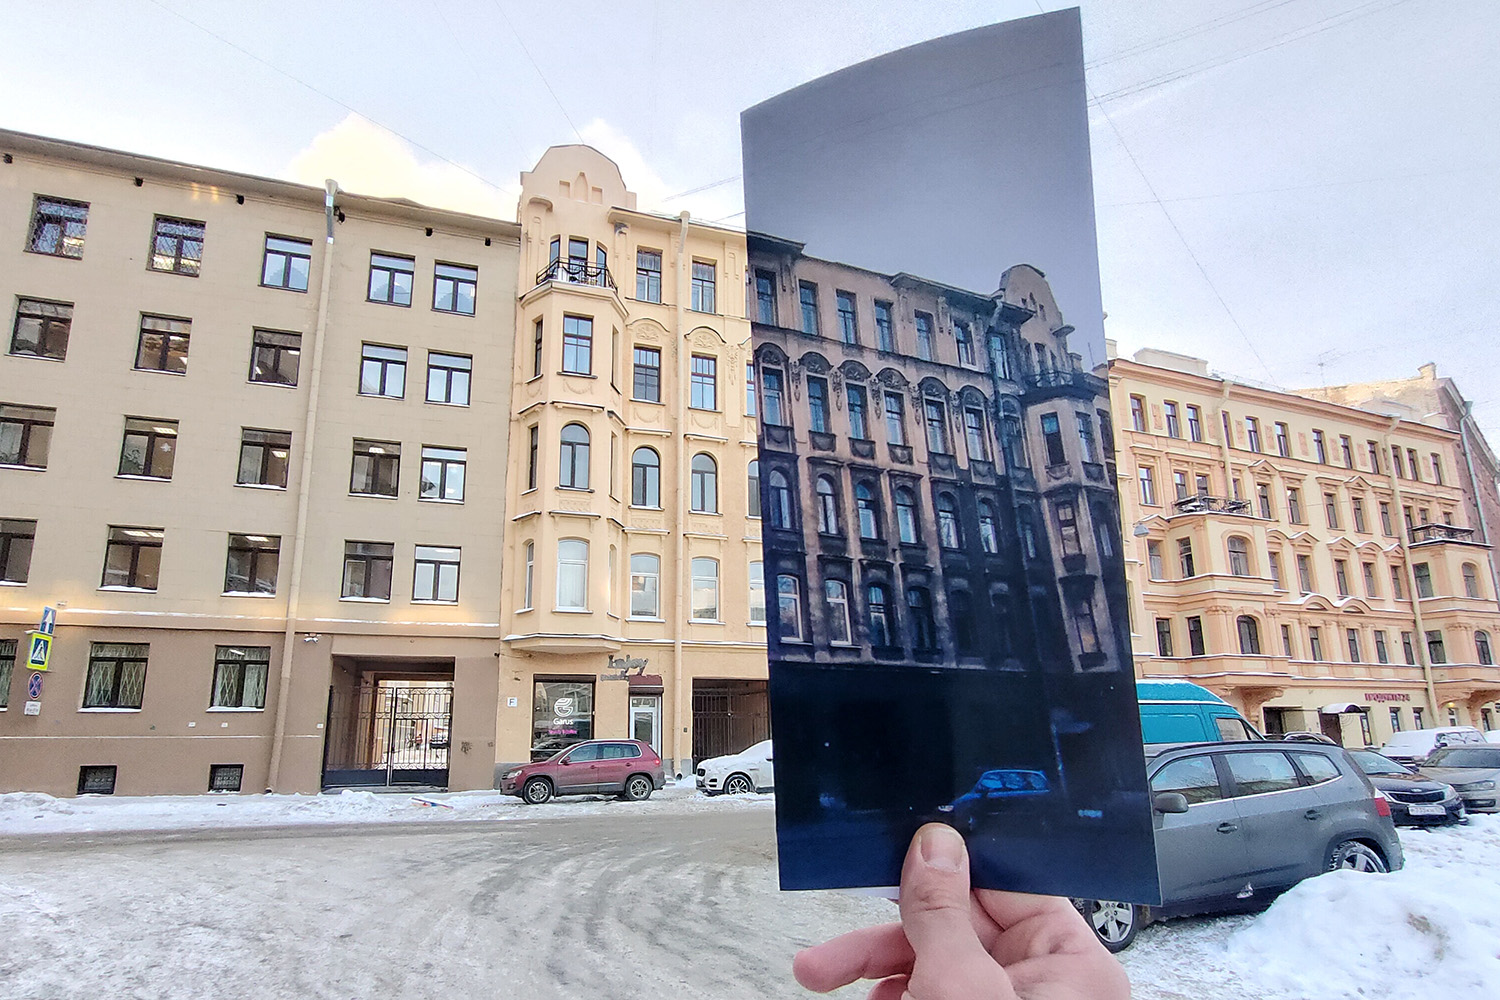 Роман с городом. Учительница 10 лет фотографировала Петербург, чтобы спасти его от забвения